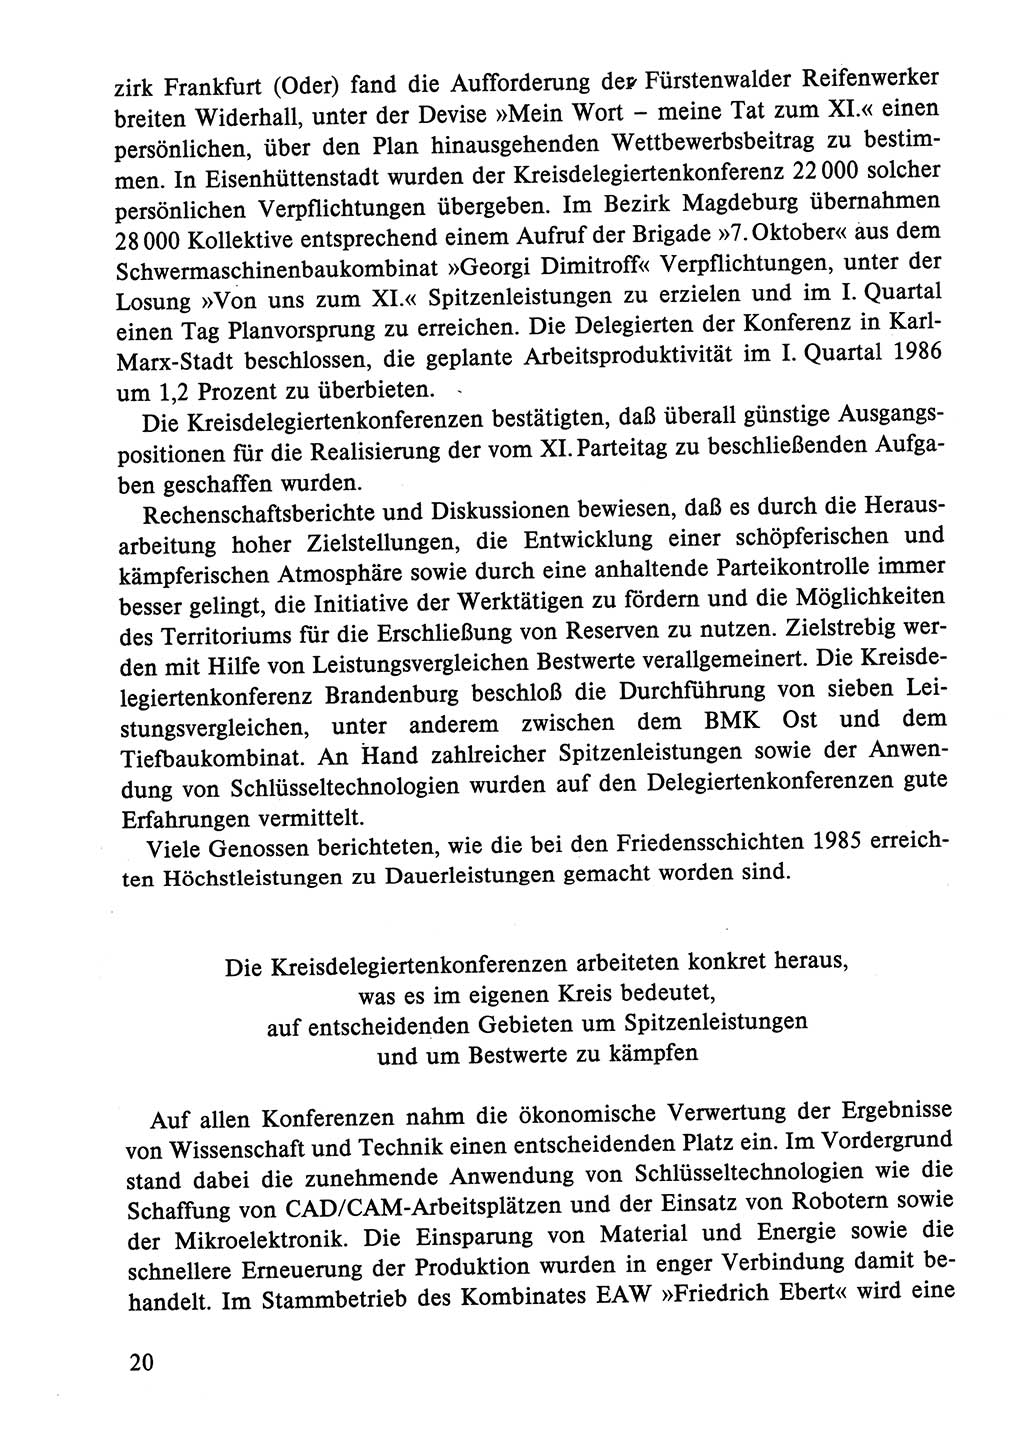 Dokumente der Sozialistischen Einheitspartei Deutschlands (SED) [Deutsche Demokratische Republik (DDR)] 1986-1987, Seite 20 (Dok. SED DDR 1986-1987, S. 20)